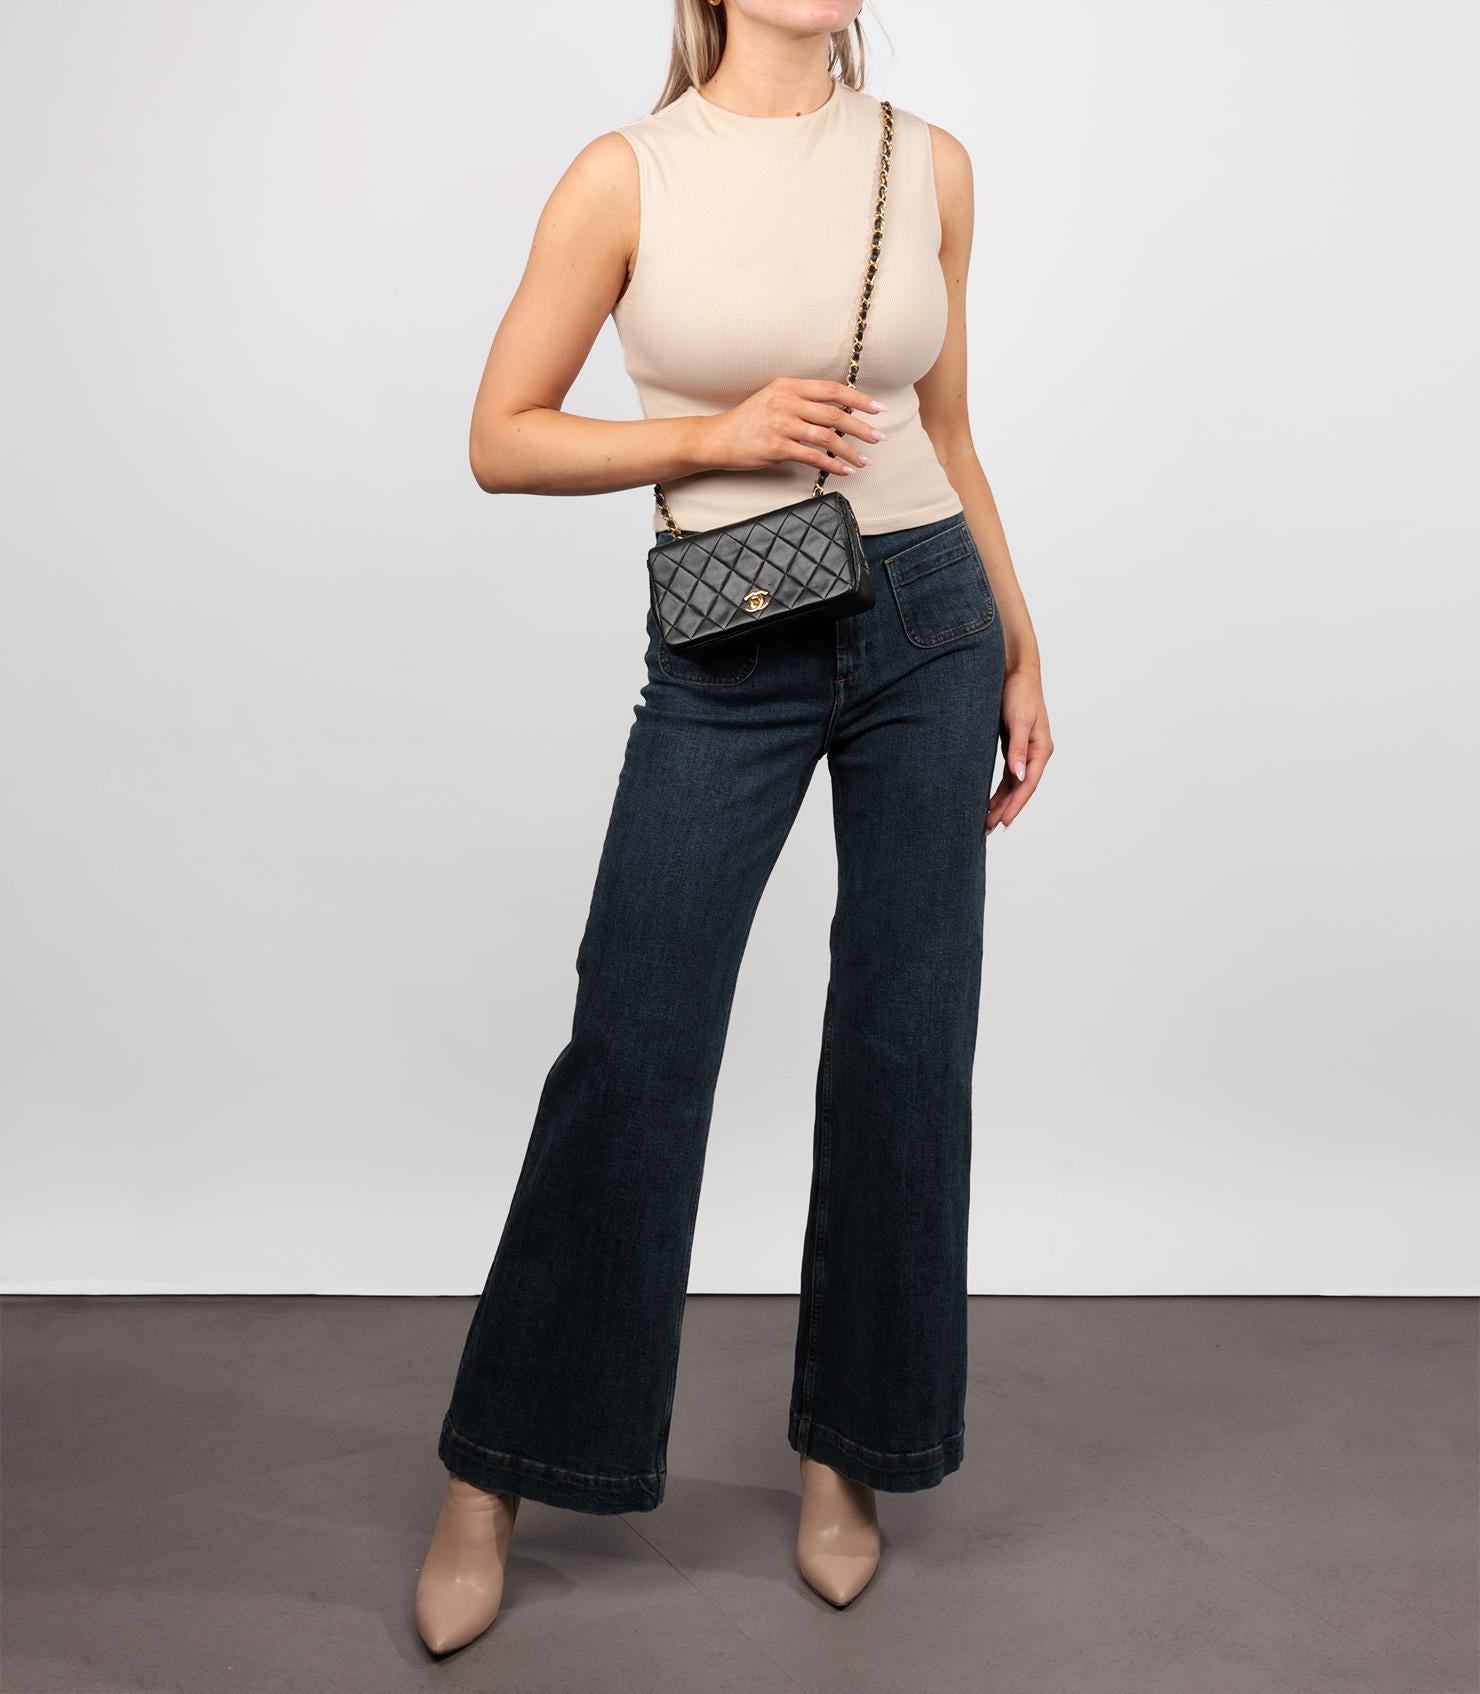 Chanel Schwarzes gestepptes Lammfell Vintage Rectangular Mini Full Flap Bag

Marke- Chanel
Modell- Rechteckige Mini-Tasche mit voller Klappe
Produkttyp- Umhängetasche, Schulter
Seriennummer- 12*****
Alter- Circa 1989
Begleitet von - Chanel